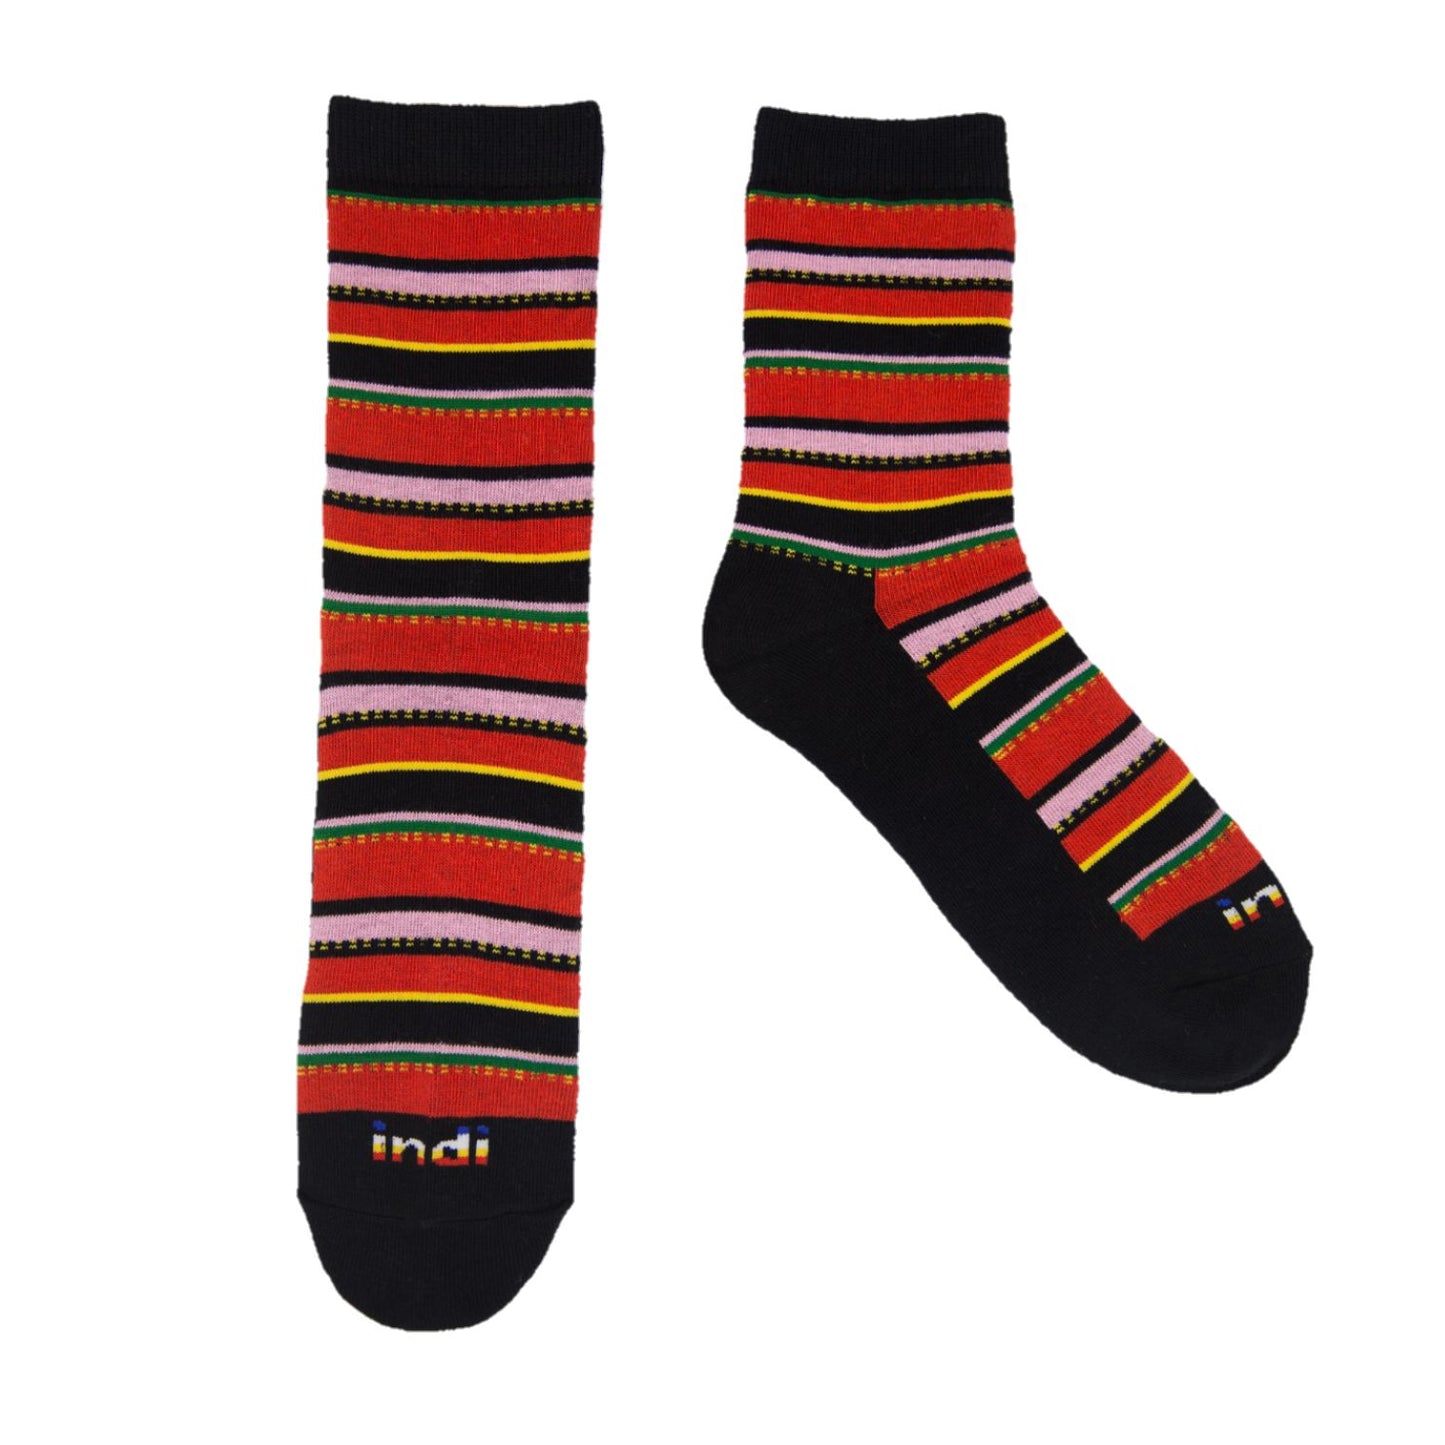 Kantarines (RB)- INDI Heritage Socks (Adult)